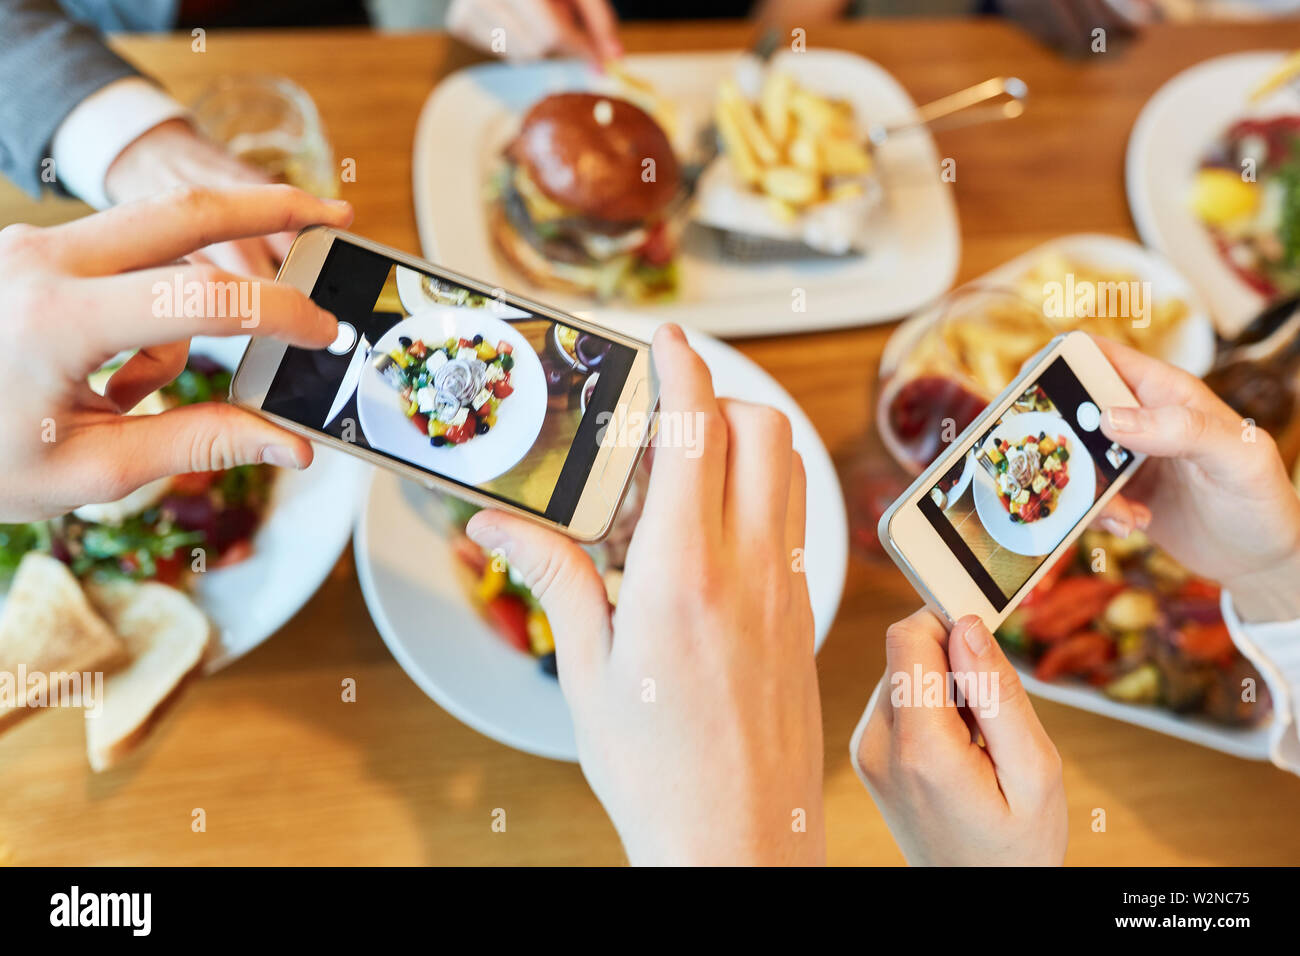 Le mani con gli smartphone fotografare il cibo sulla tavola in ristorante Foto Stock